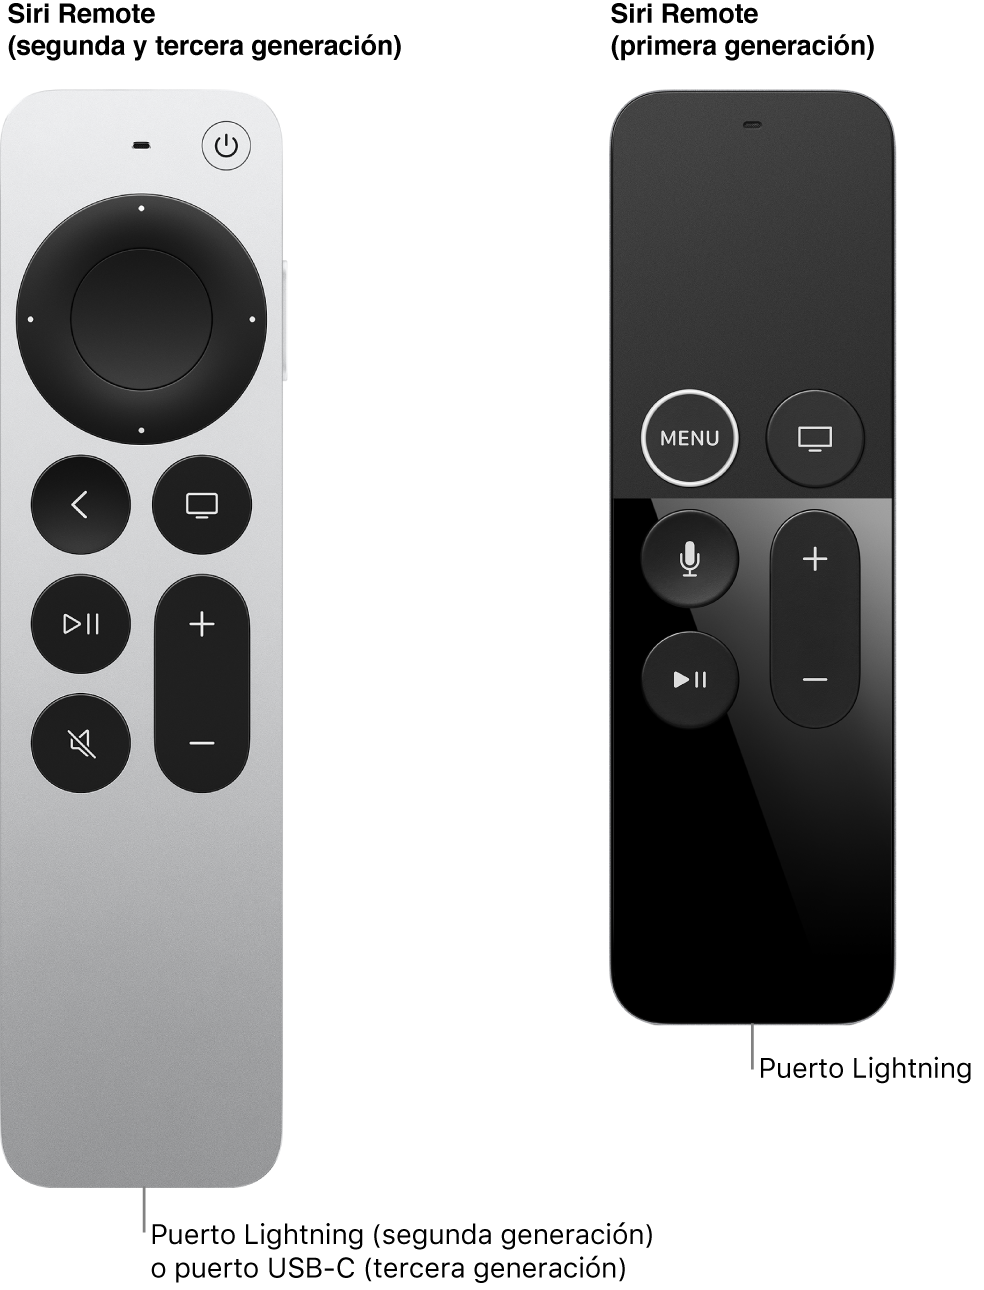 Imagen del Siri Remote (segunda y tercera generación) y del Siri Remote (primera generación) mostrando el puerto de conexión